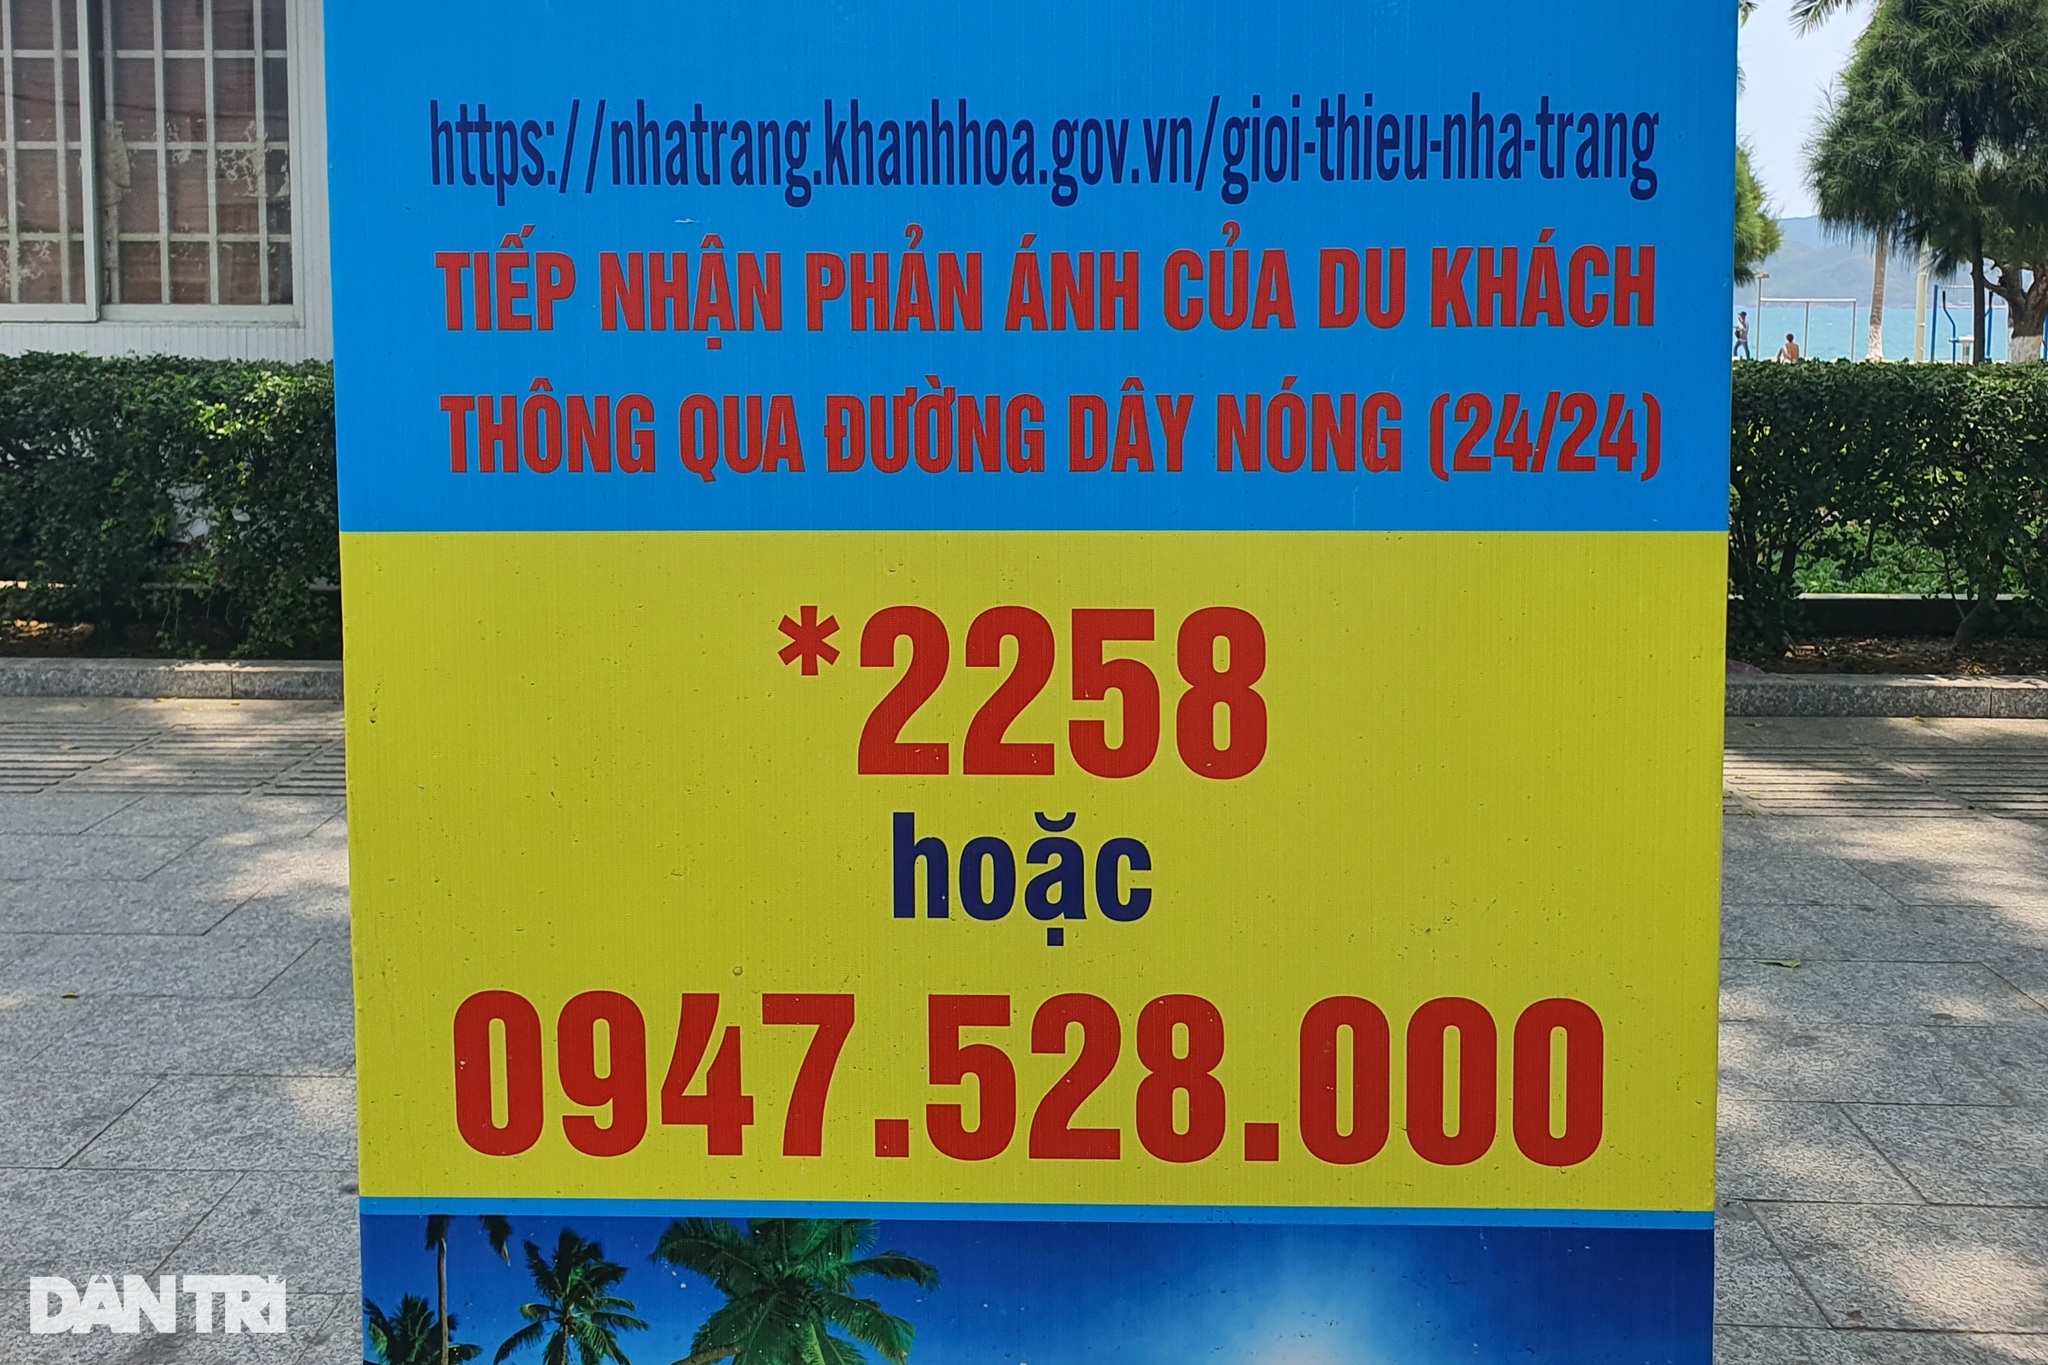 Số đường dây nóng hỗ trợ khách du lịch 24/24 được niêm yết ở đường phố Nha Trang (Ảnh: Trung Thi).